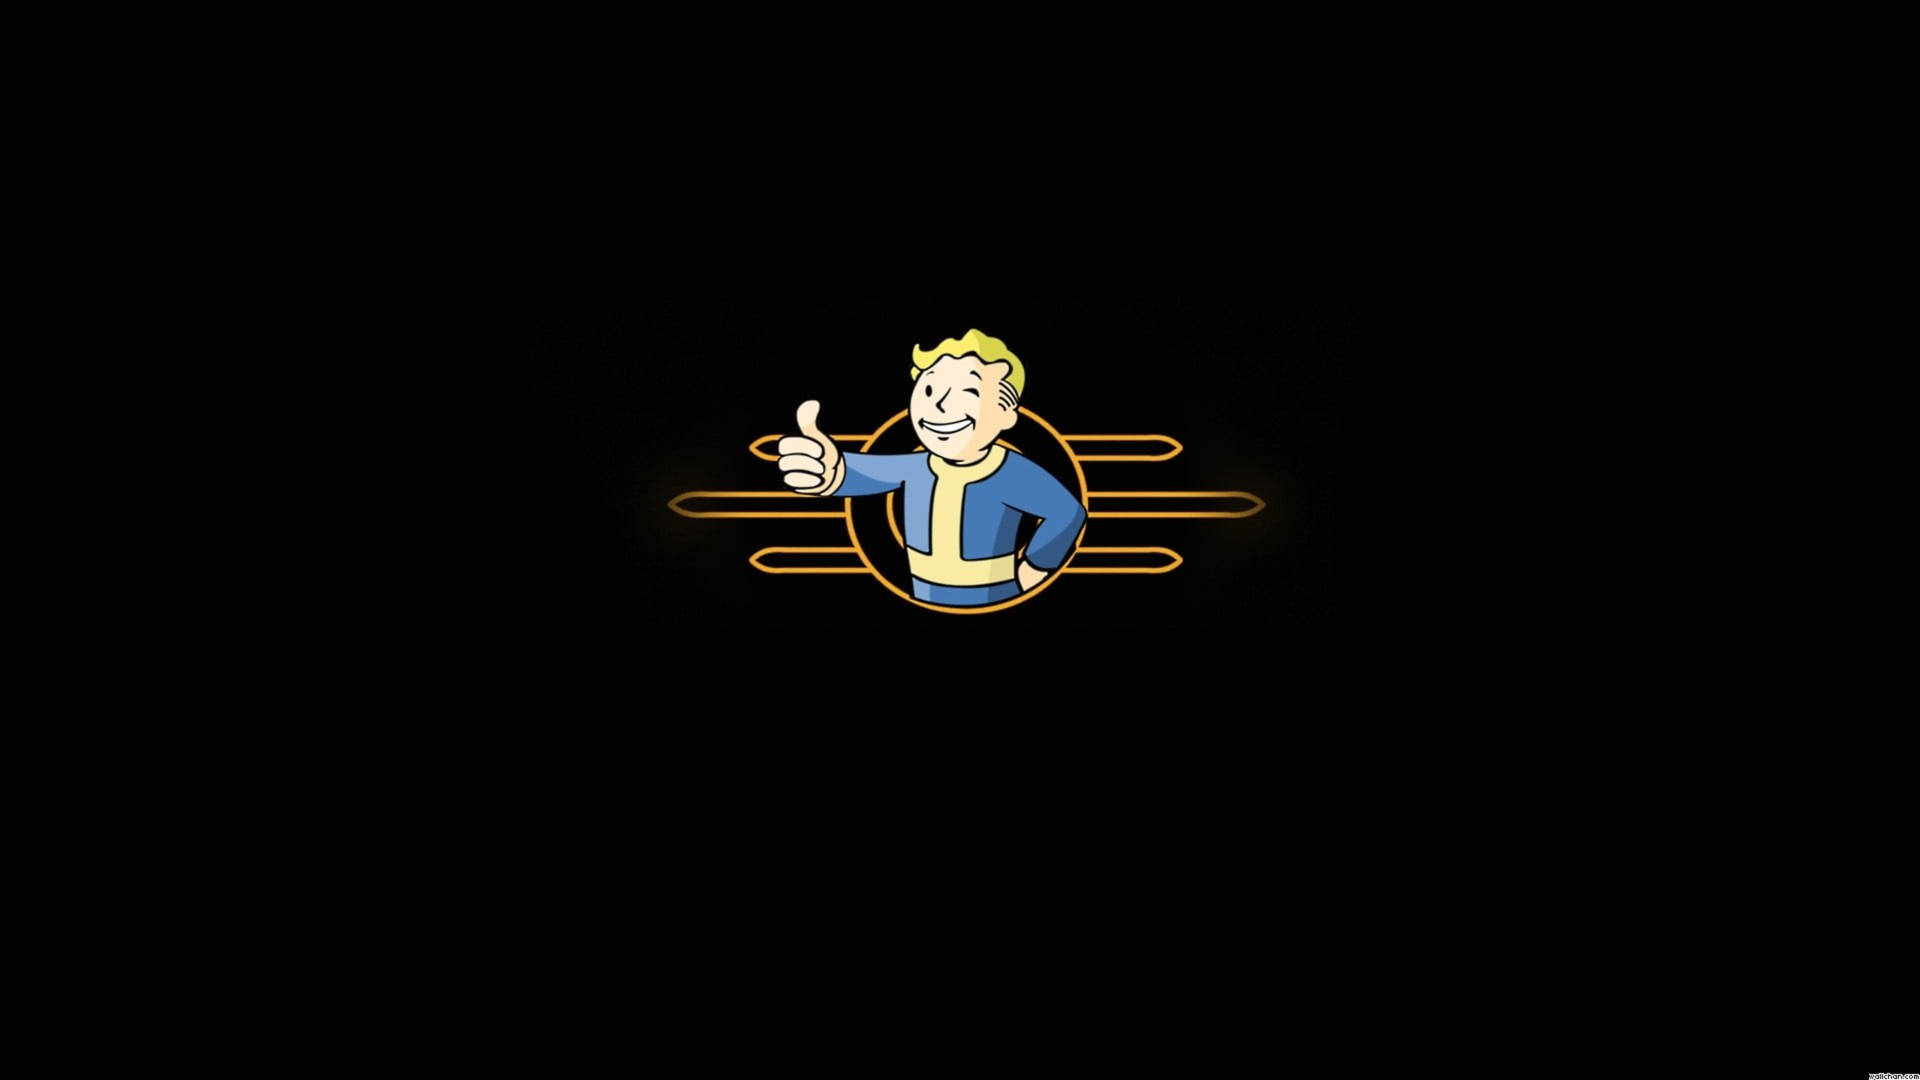 Tapetför Dator Eller Mobil: Fallout 4 4k Vault Boy Minimalist. Wallpaper